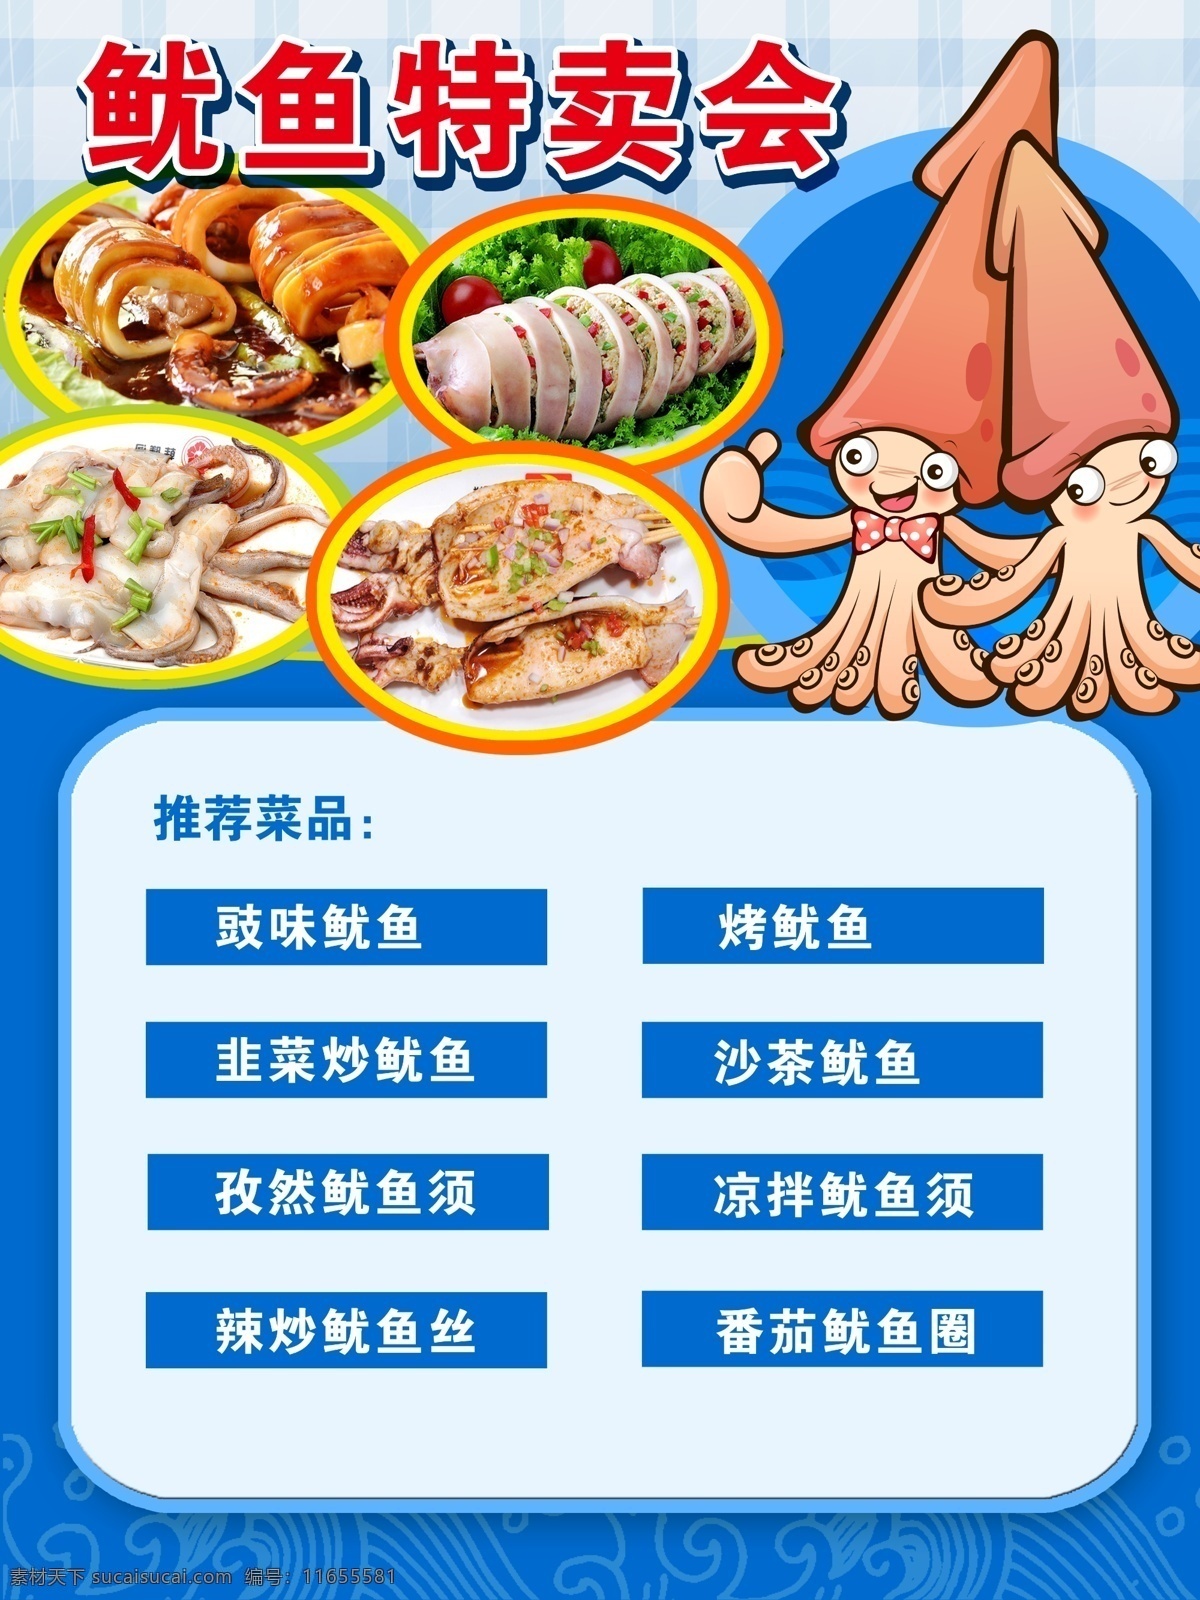 鱿鱼 pop 菜品 特卖会 铁板 生鲜 海鲜 超市 促销